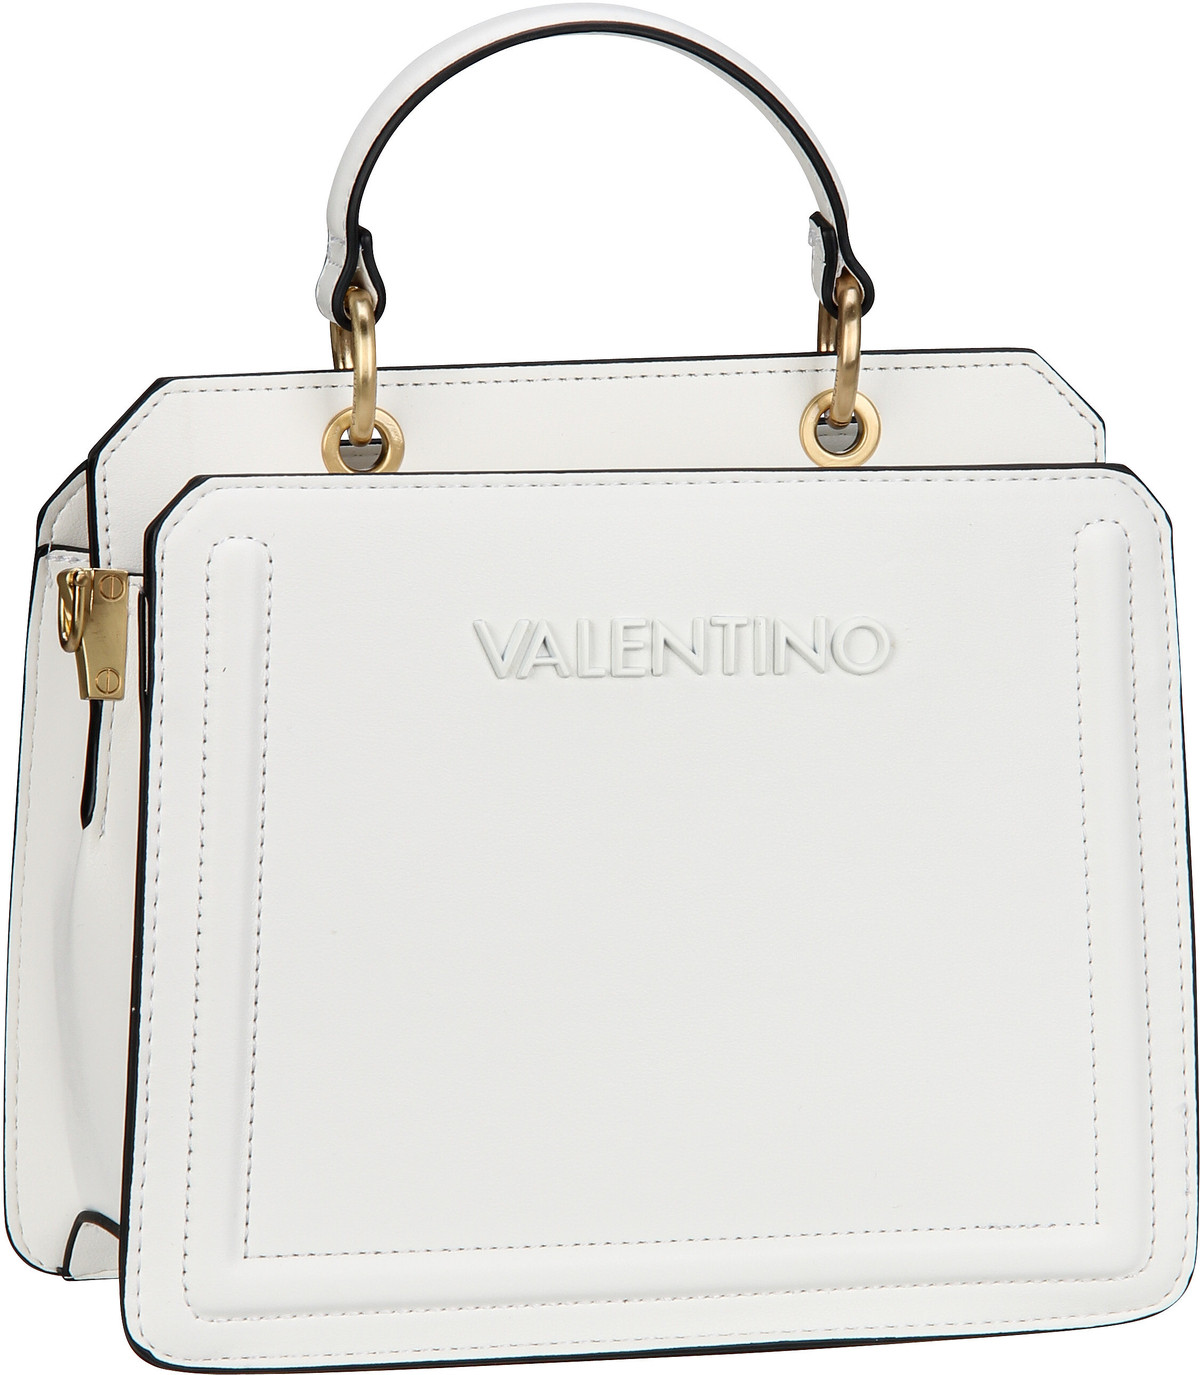 Valentino Ipanema RE Q01  in Weiß (5.9 Liter), Handtasche